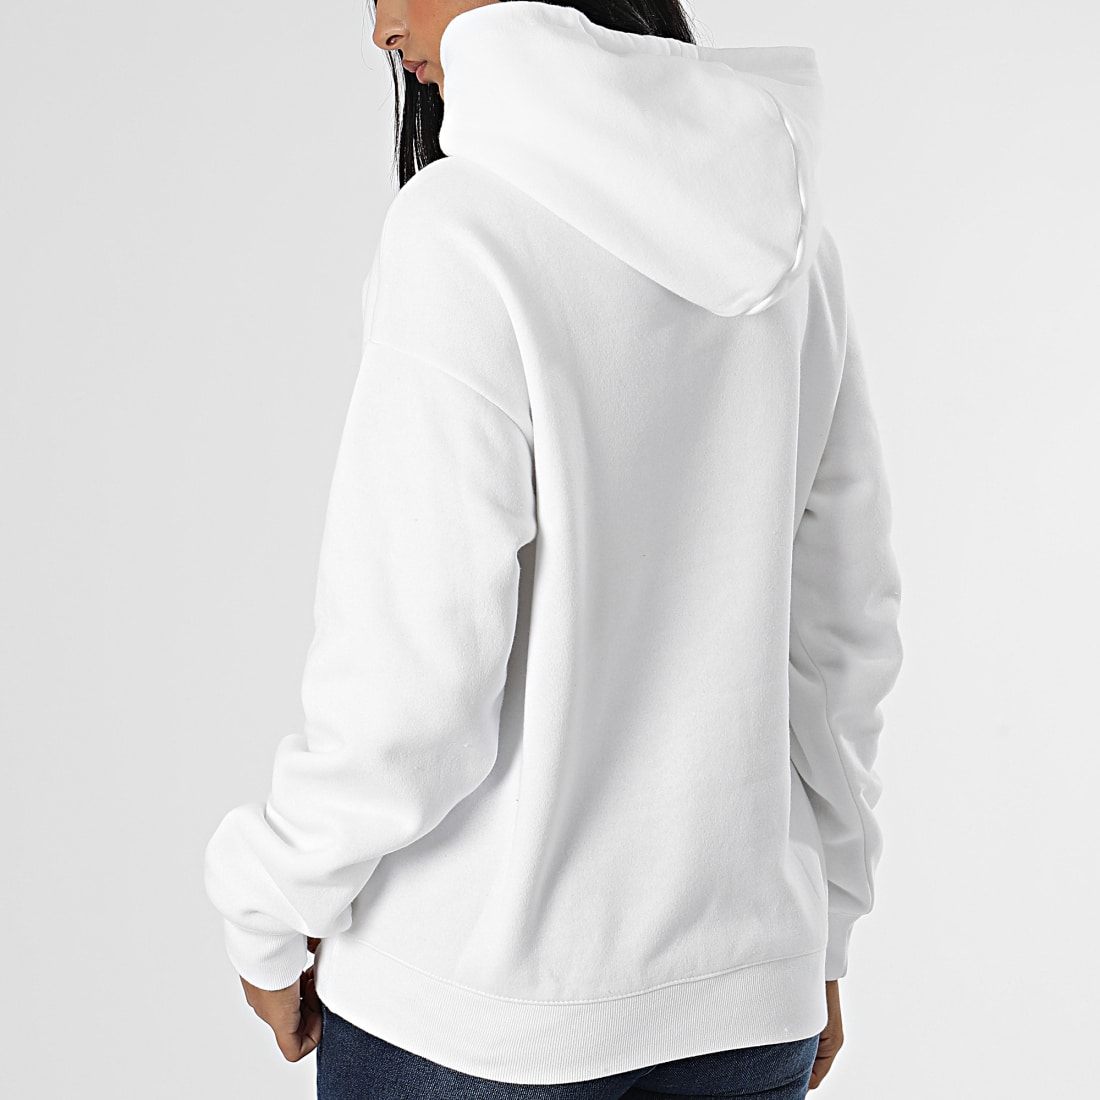 Sweat-shirt à capuche zippé pour femmes blanc – VVetech